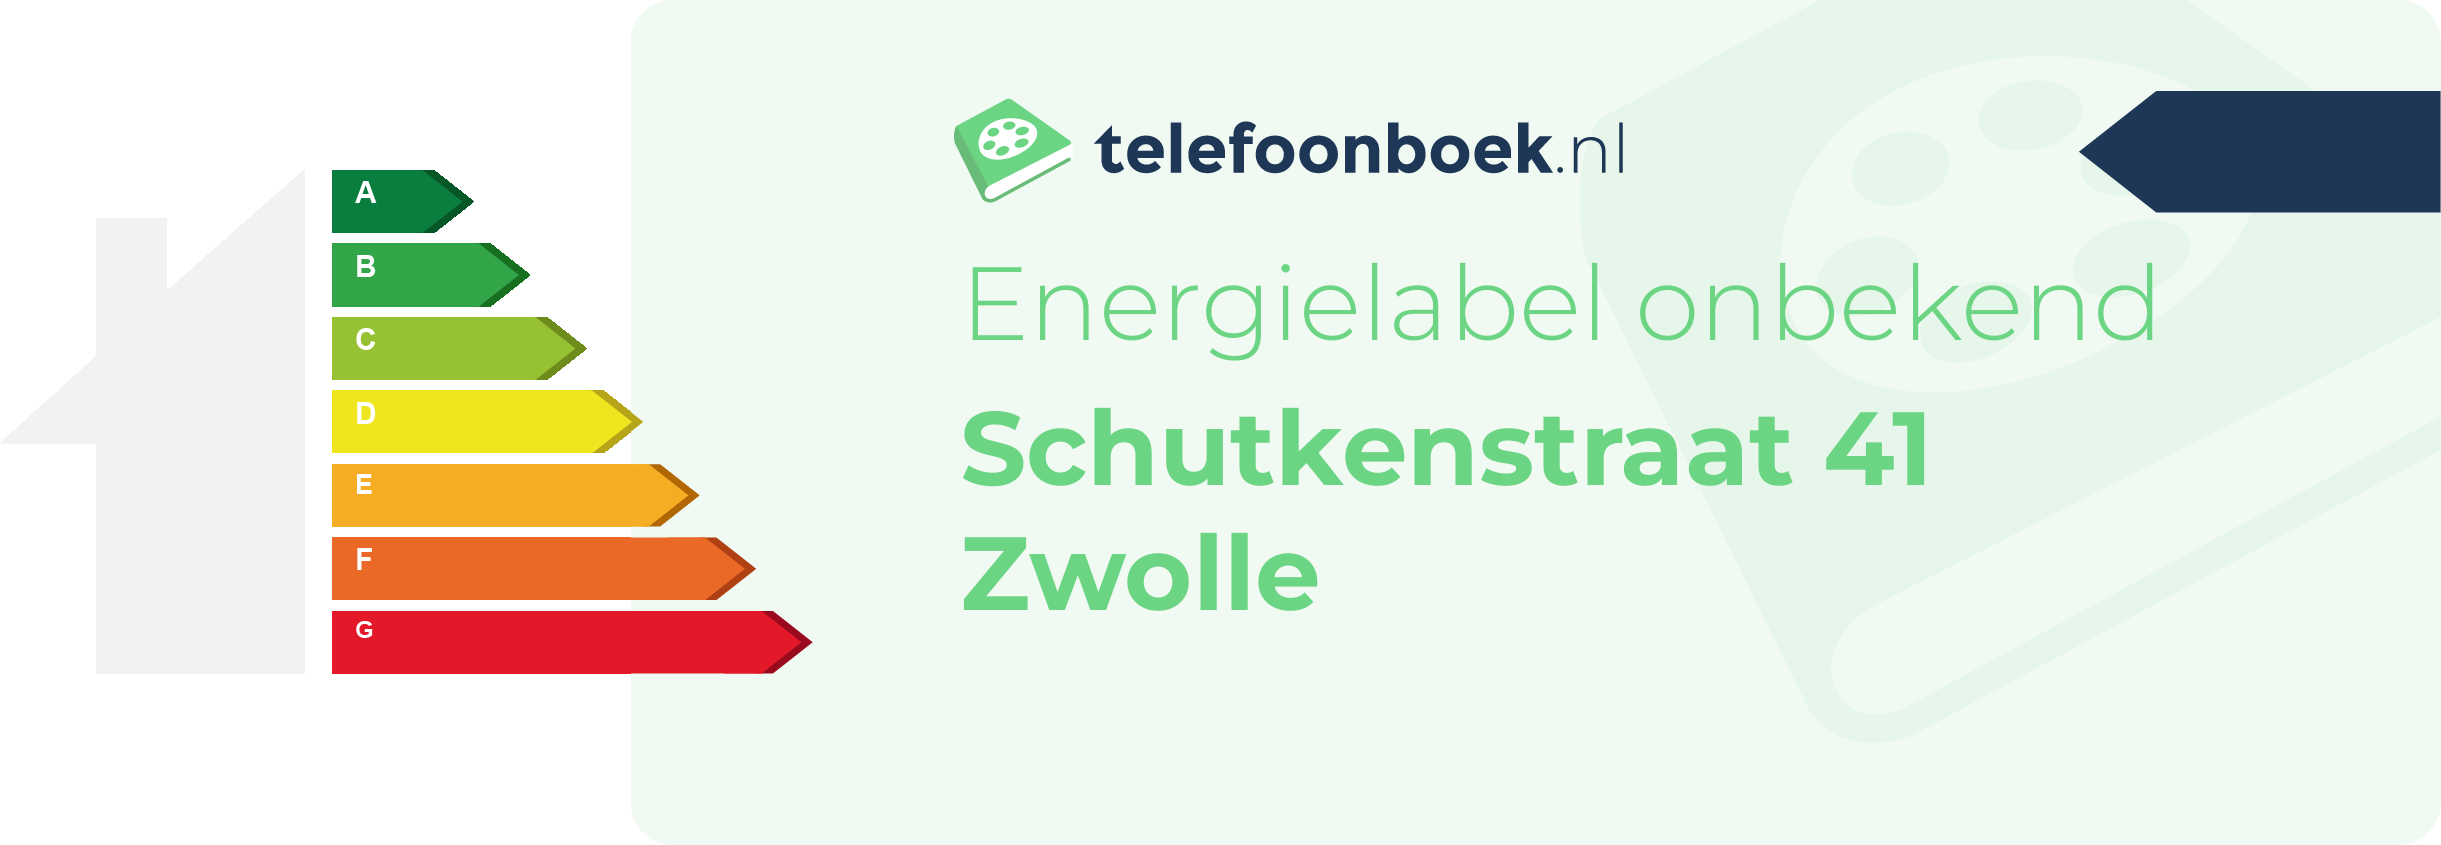 Energielabel Schutkenstraat 41 Zwolle